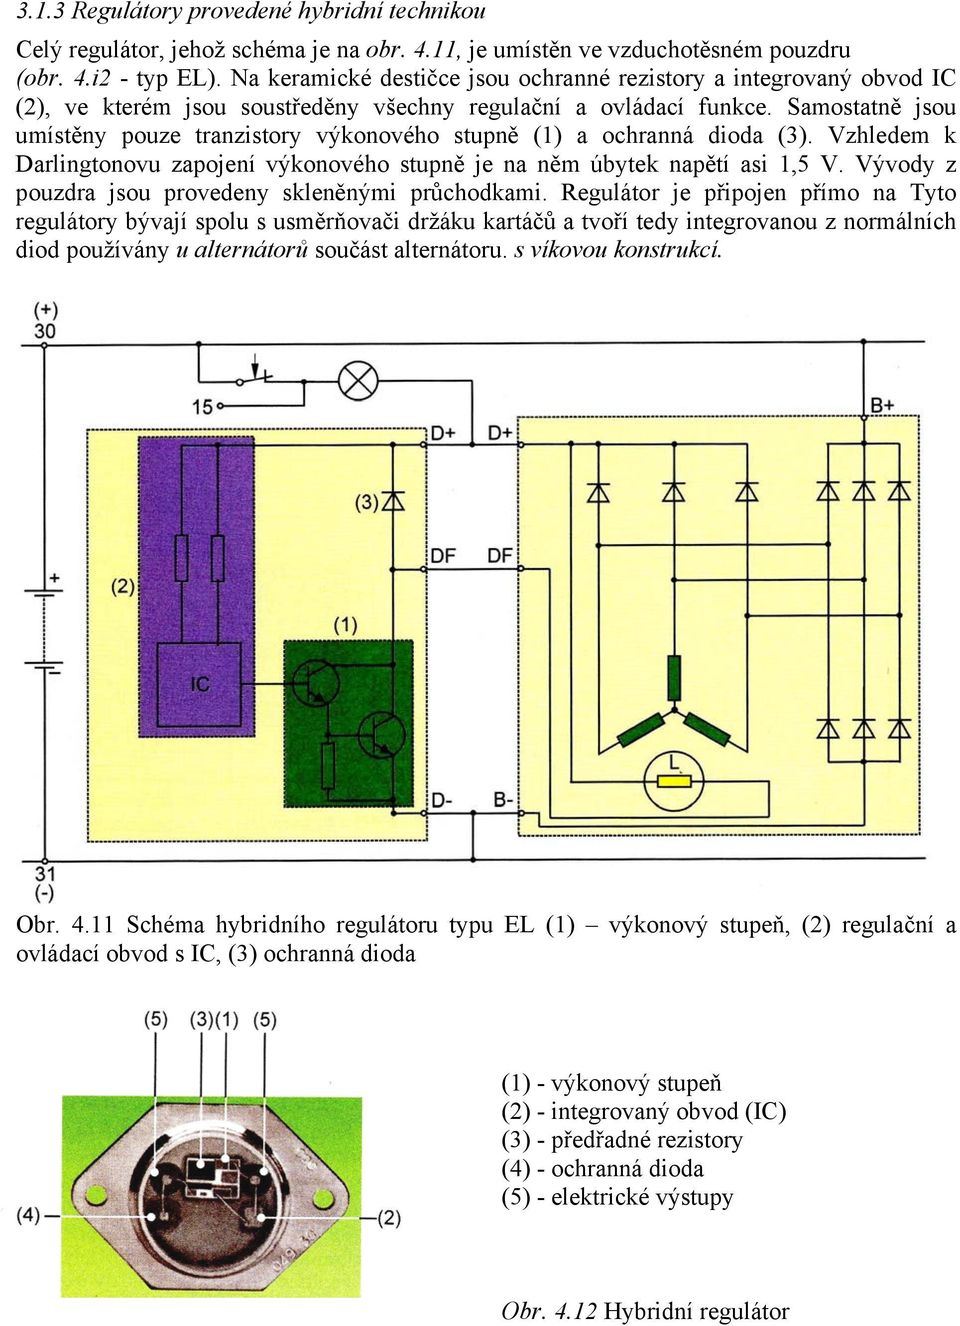 Samostatně jsou umístěny pouze tranzistory výkonového stupně (1) a ochranná dioda (3). Vzhledem k Darlingtonovu zapojení výkonového stupně je na něm úbytek napětí asi 1,5 V.